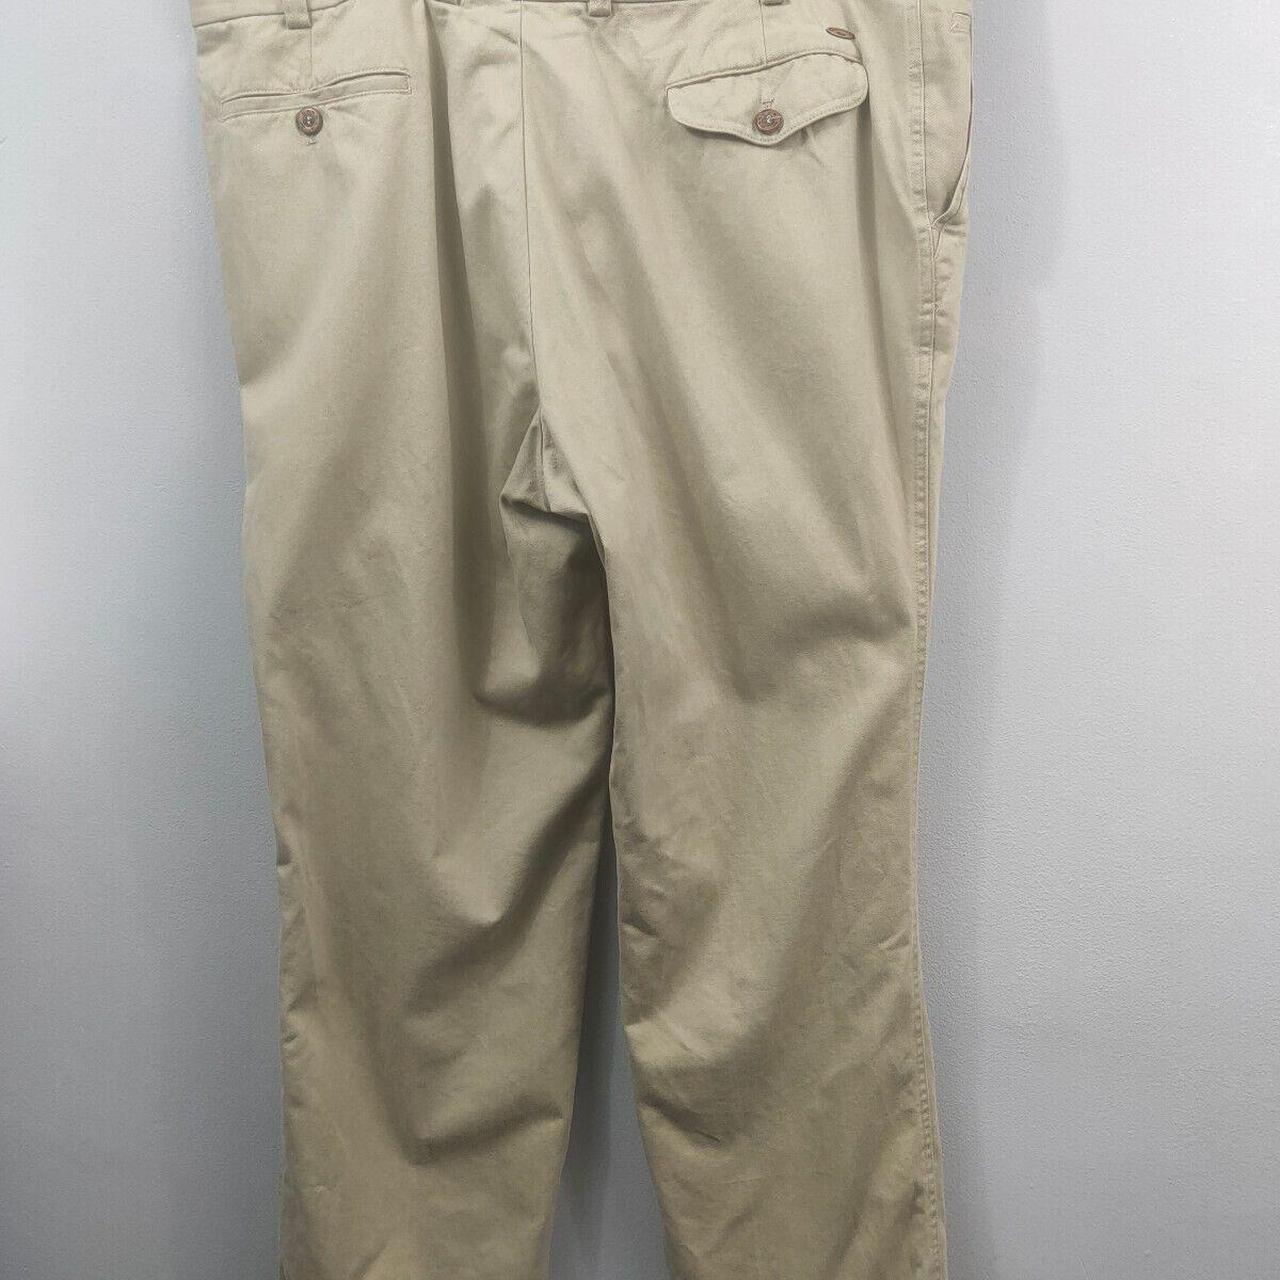 Oakman Men's Trousers Size Size 42 R Item... - Depop